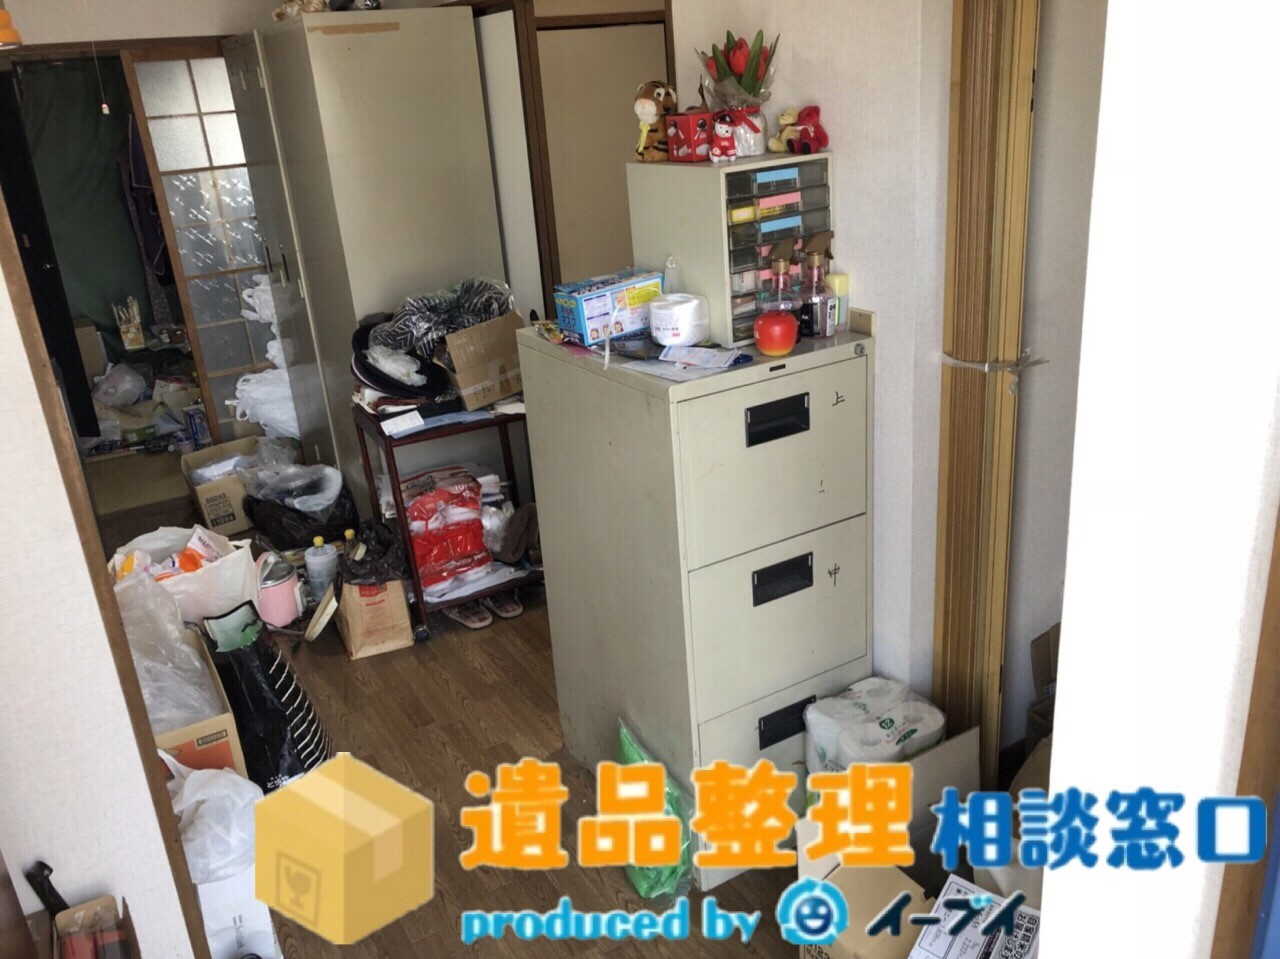 大阪府堺市で生活ゴミや家具の処分で遺品整理のご依頼を頂きました。のアイキャッチ